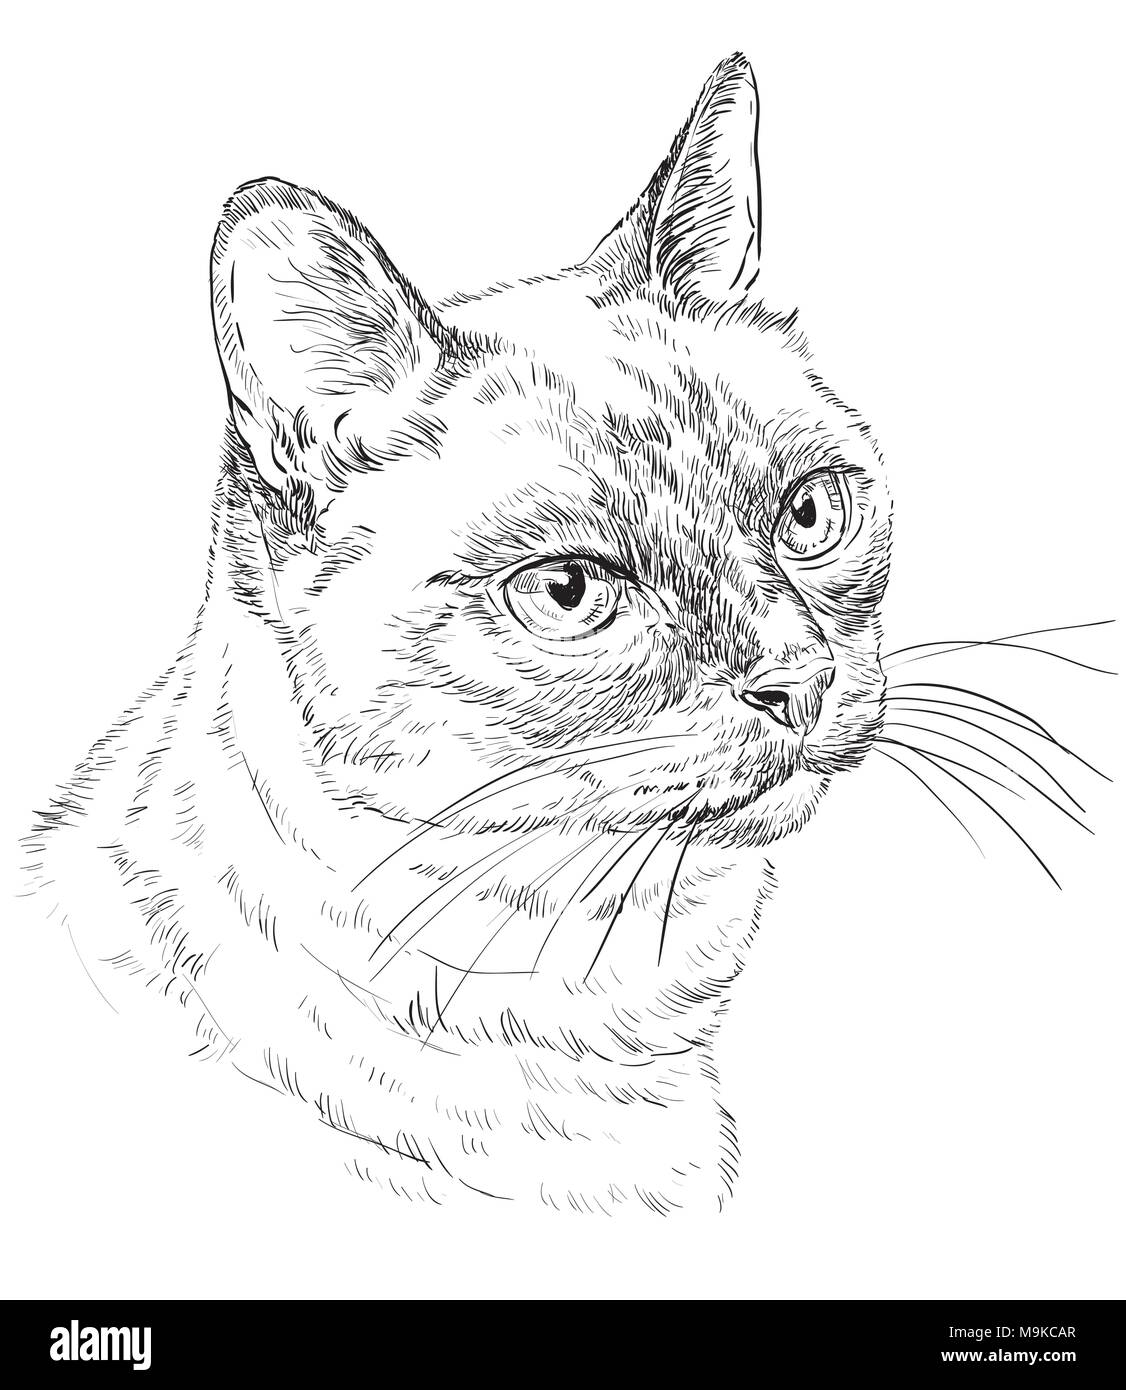 Vektor Kontur monochrome Portrait von neugierig Siamesische Katze in der Farbe schwarz. Hand Zeichnung Abbildung isoliert auf weißem Hintergrund Stock Vektor